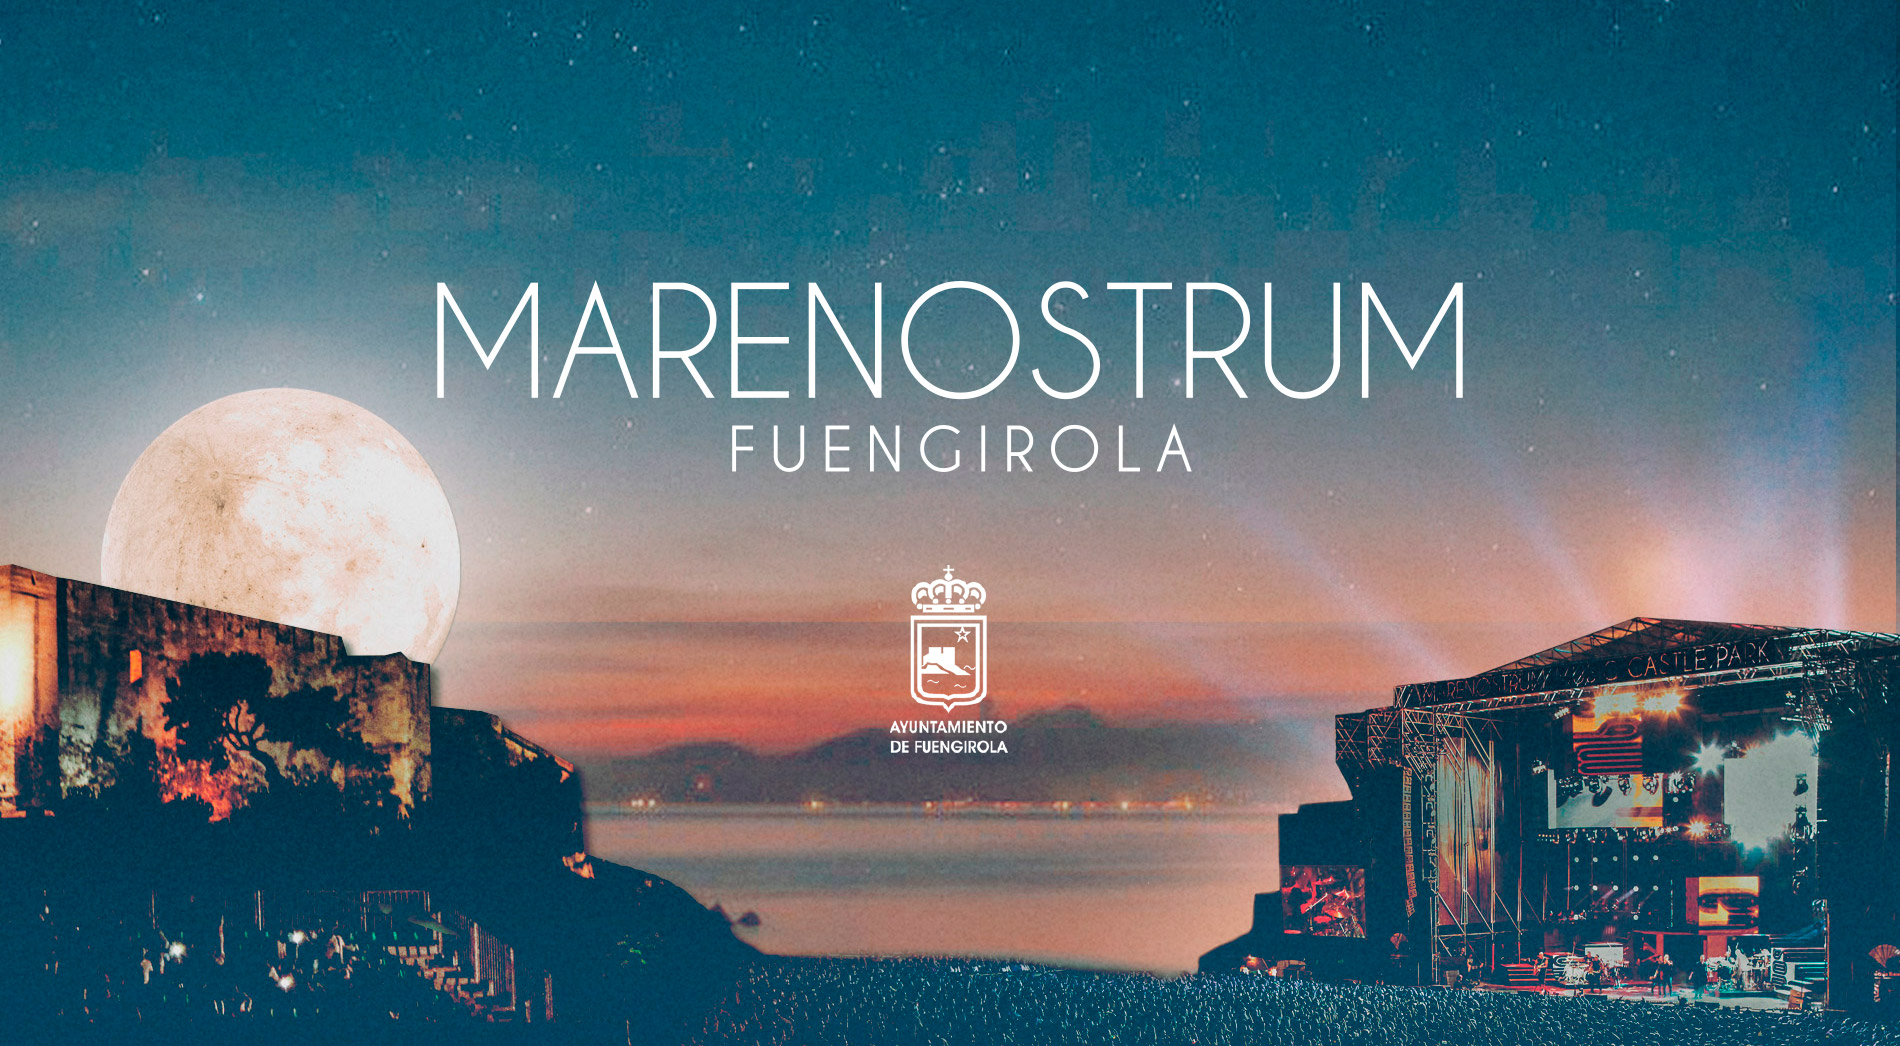 “La Terraza” Marenostrum Fuengirola 2020